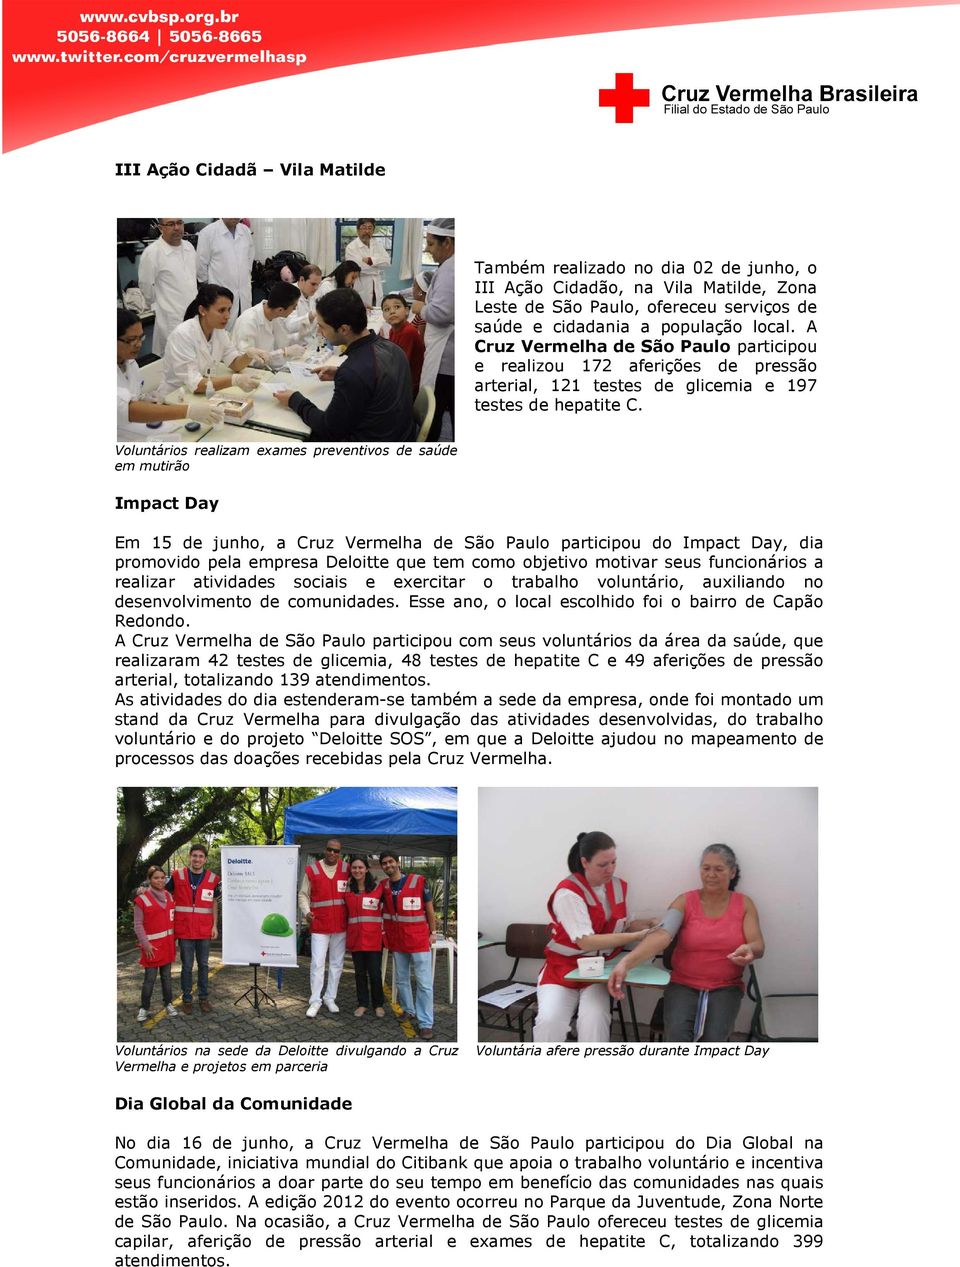 Voluntários realizam exames preventivos de saúde em mutirão Impact Day Em 15 de junho, a Cruz Vermelha de São Paulo participou do Impact Day, dia promovido pela empresa Deloitte que tem como objetivo